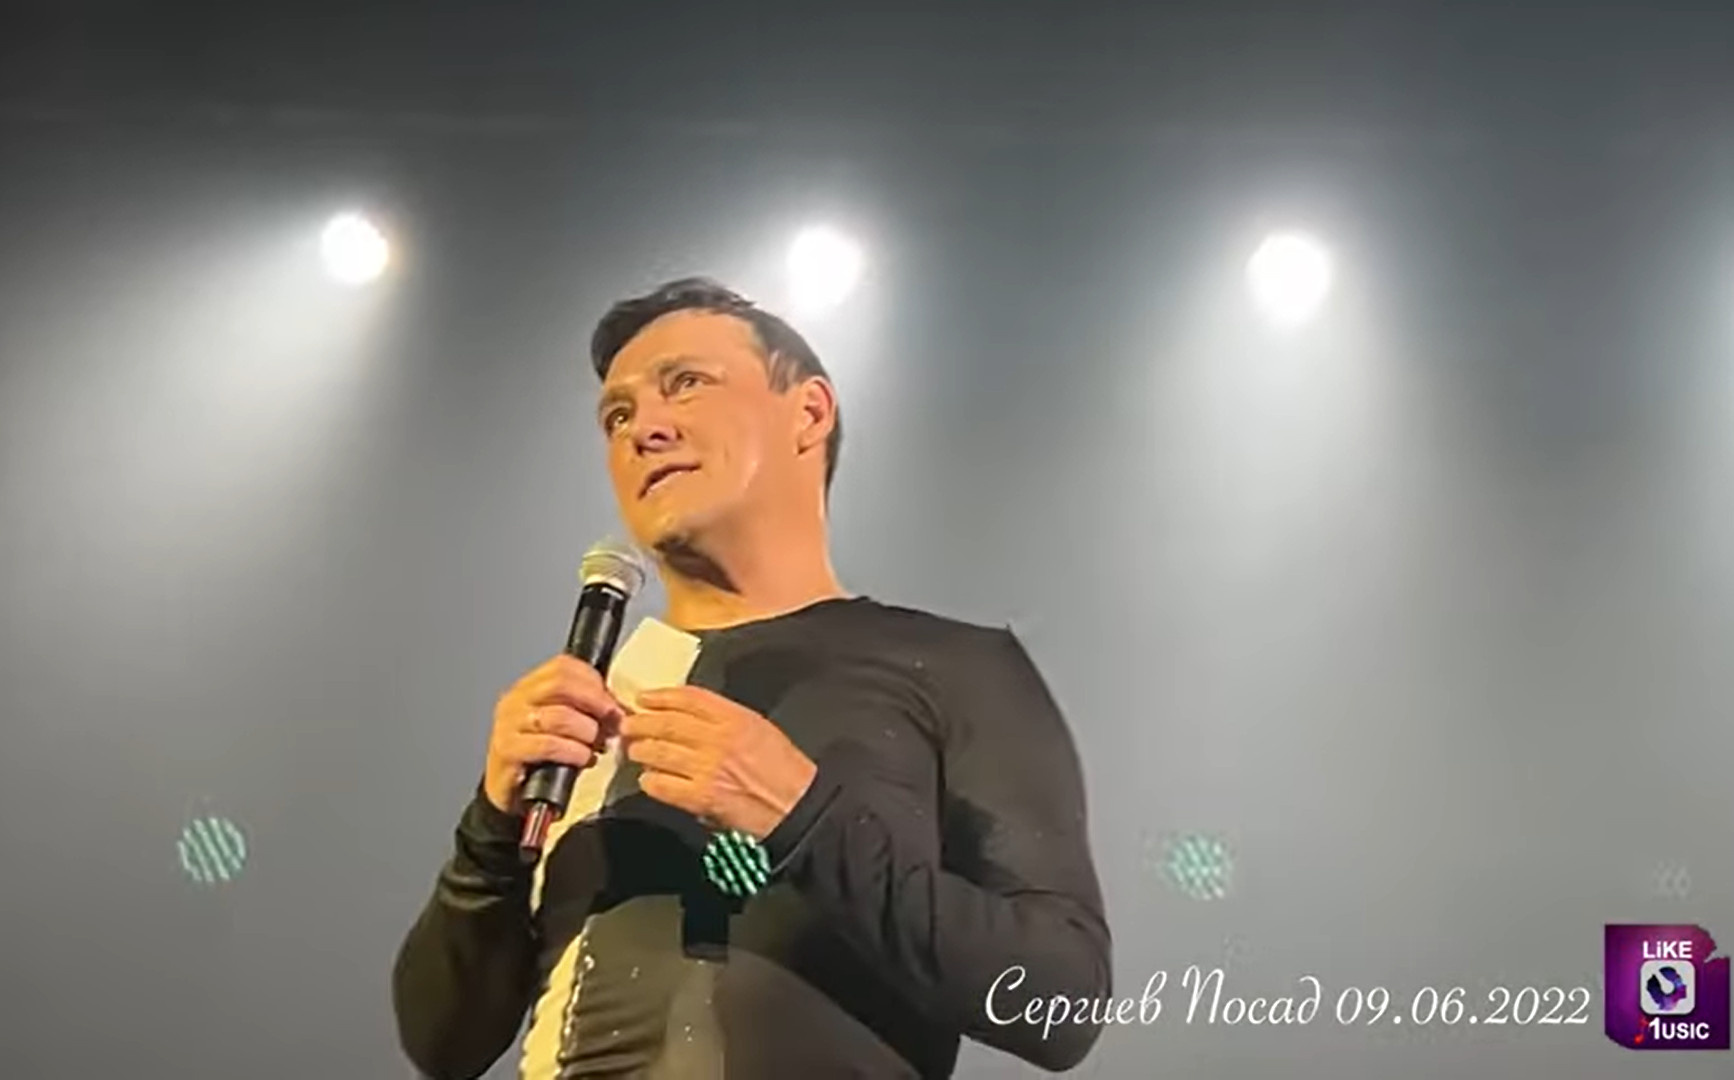 Кадр из видео в YouTube с концерта в Сергиевом Посаде